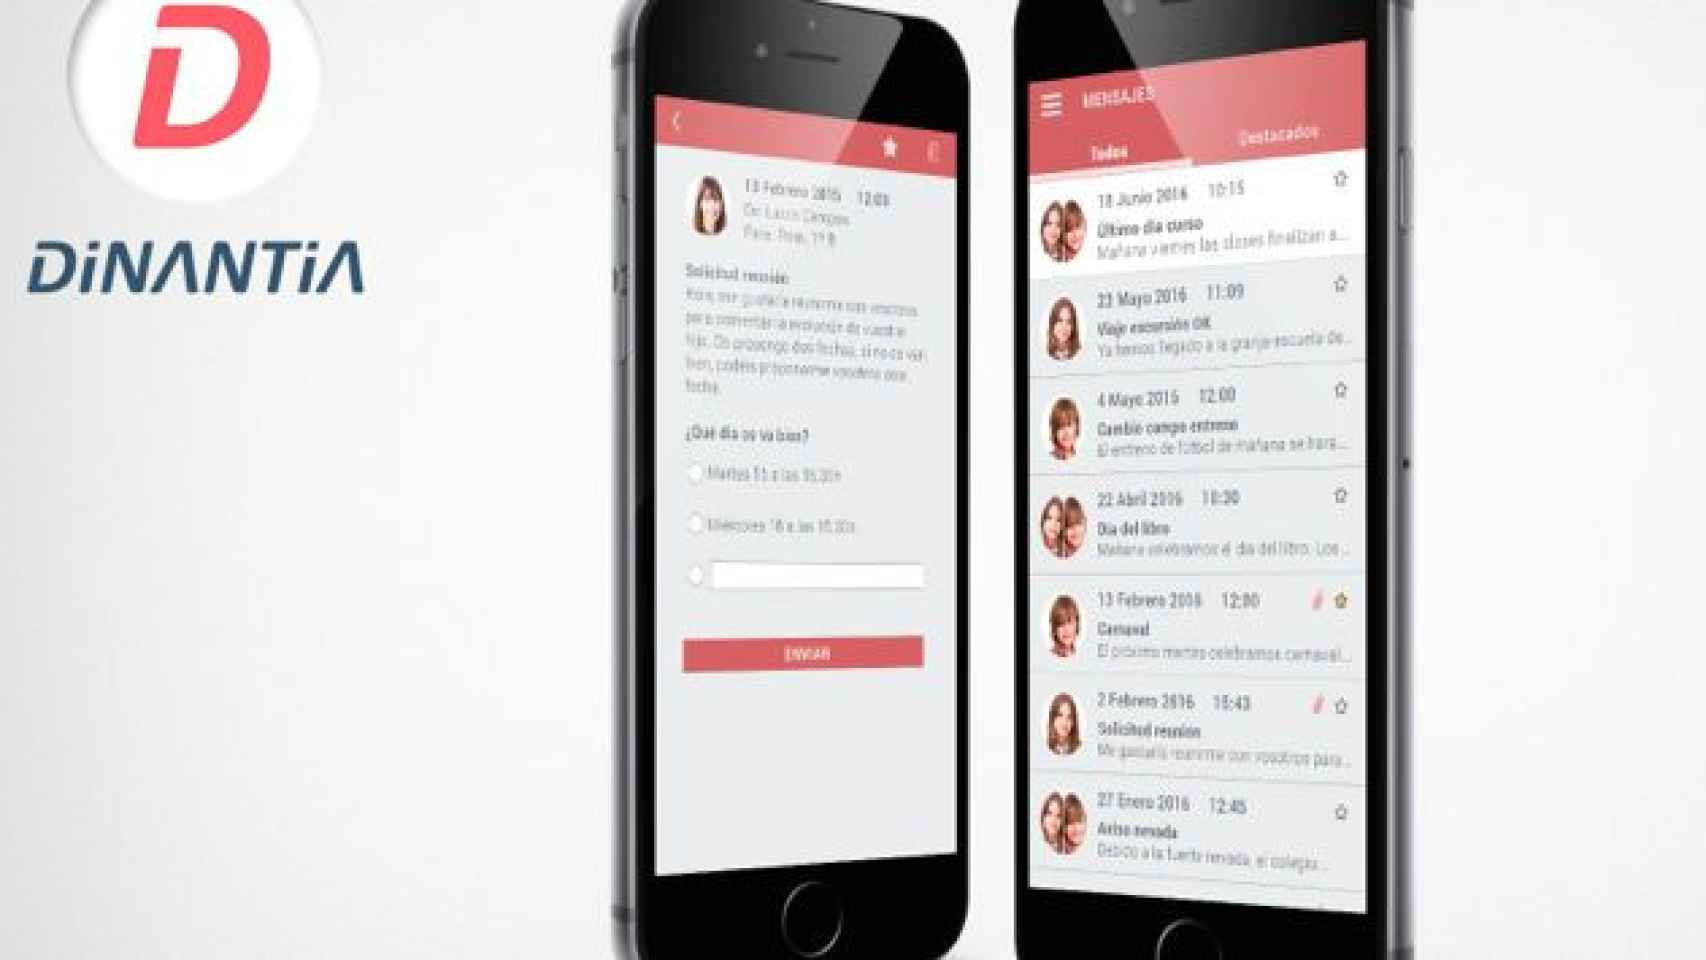 La 'app' Dinantia incluye el nuevo módulo 'Stop Bullying' para denunciar el bullying.